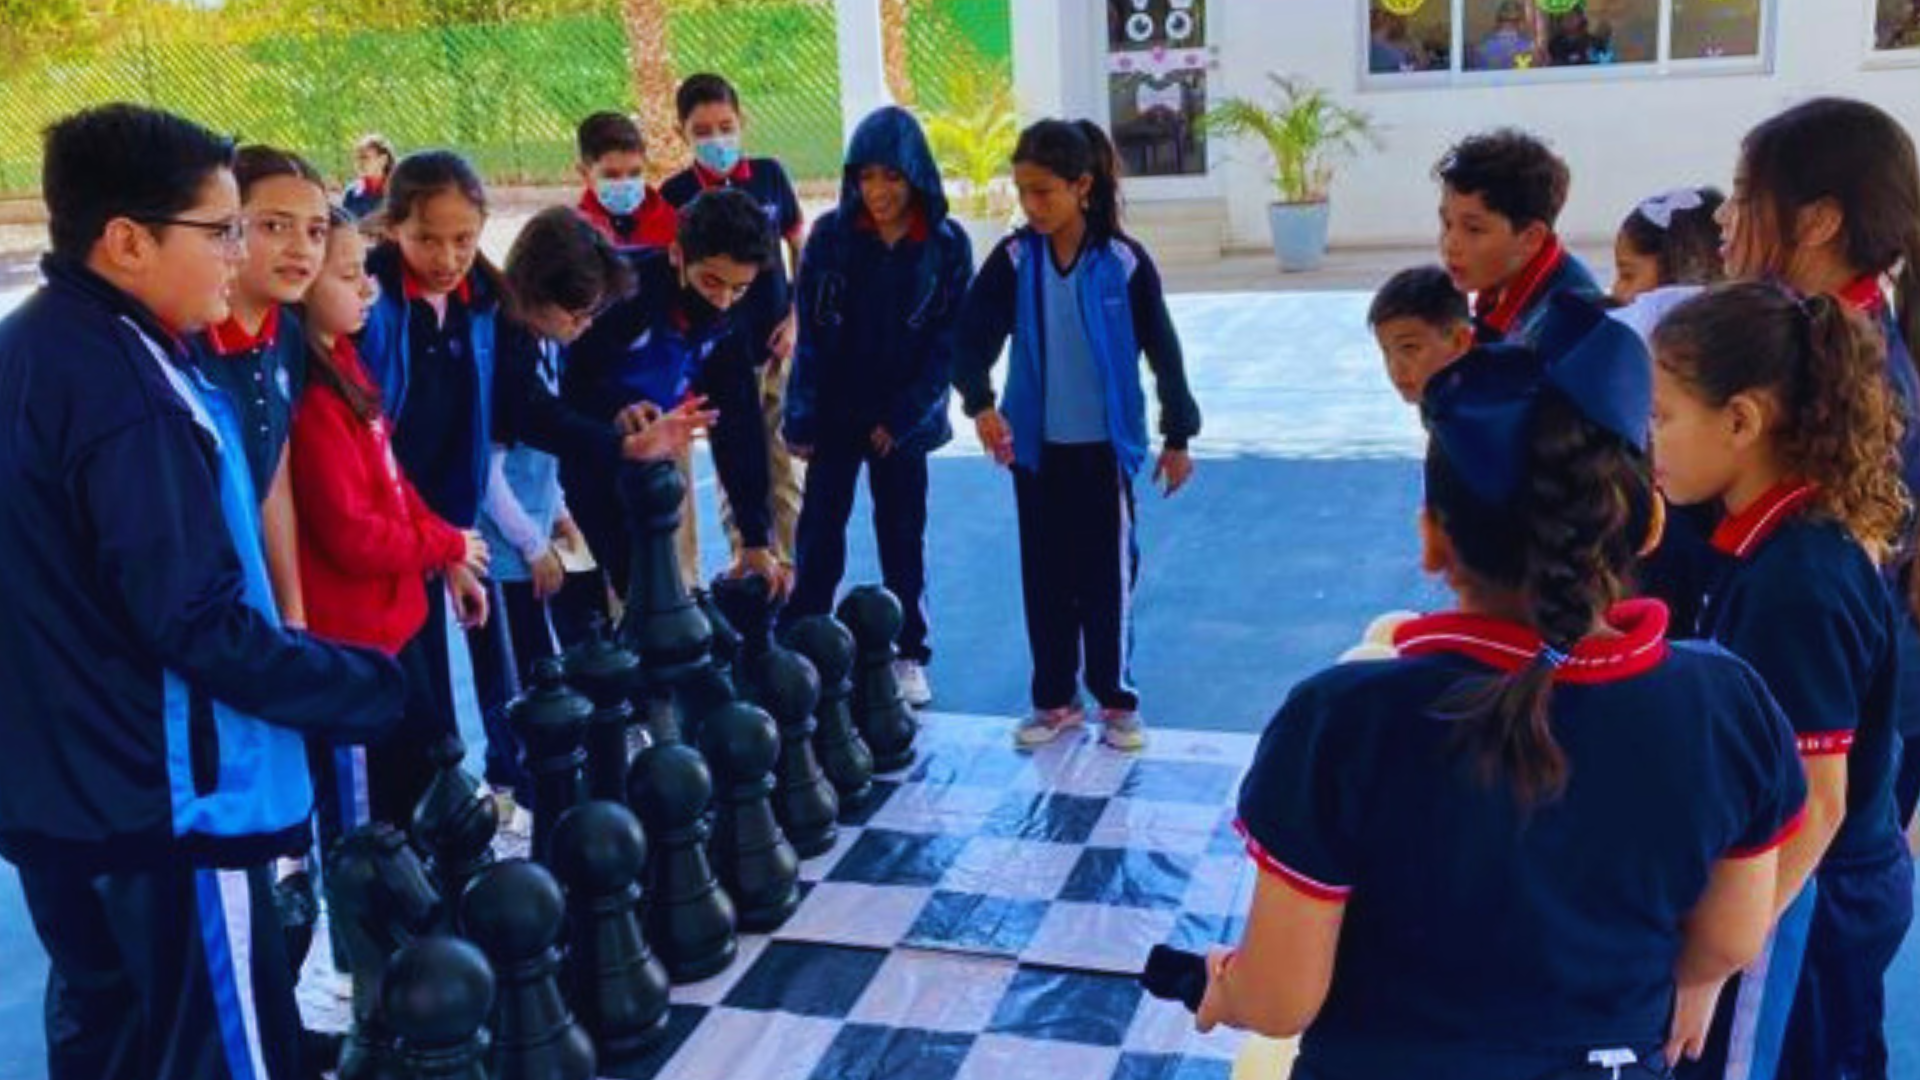 Chess in School – Elementary School